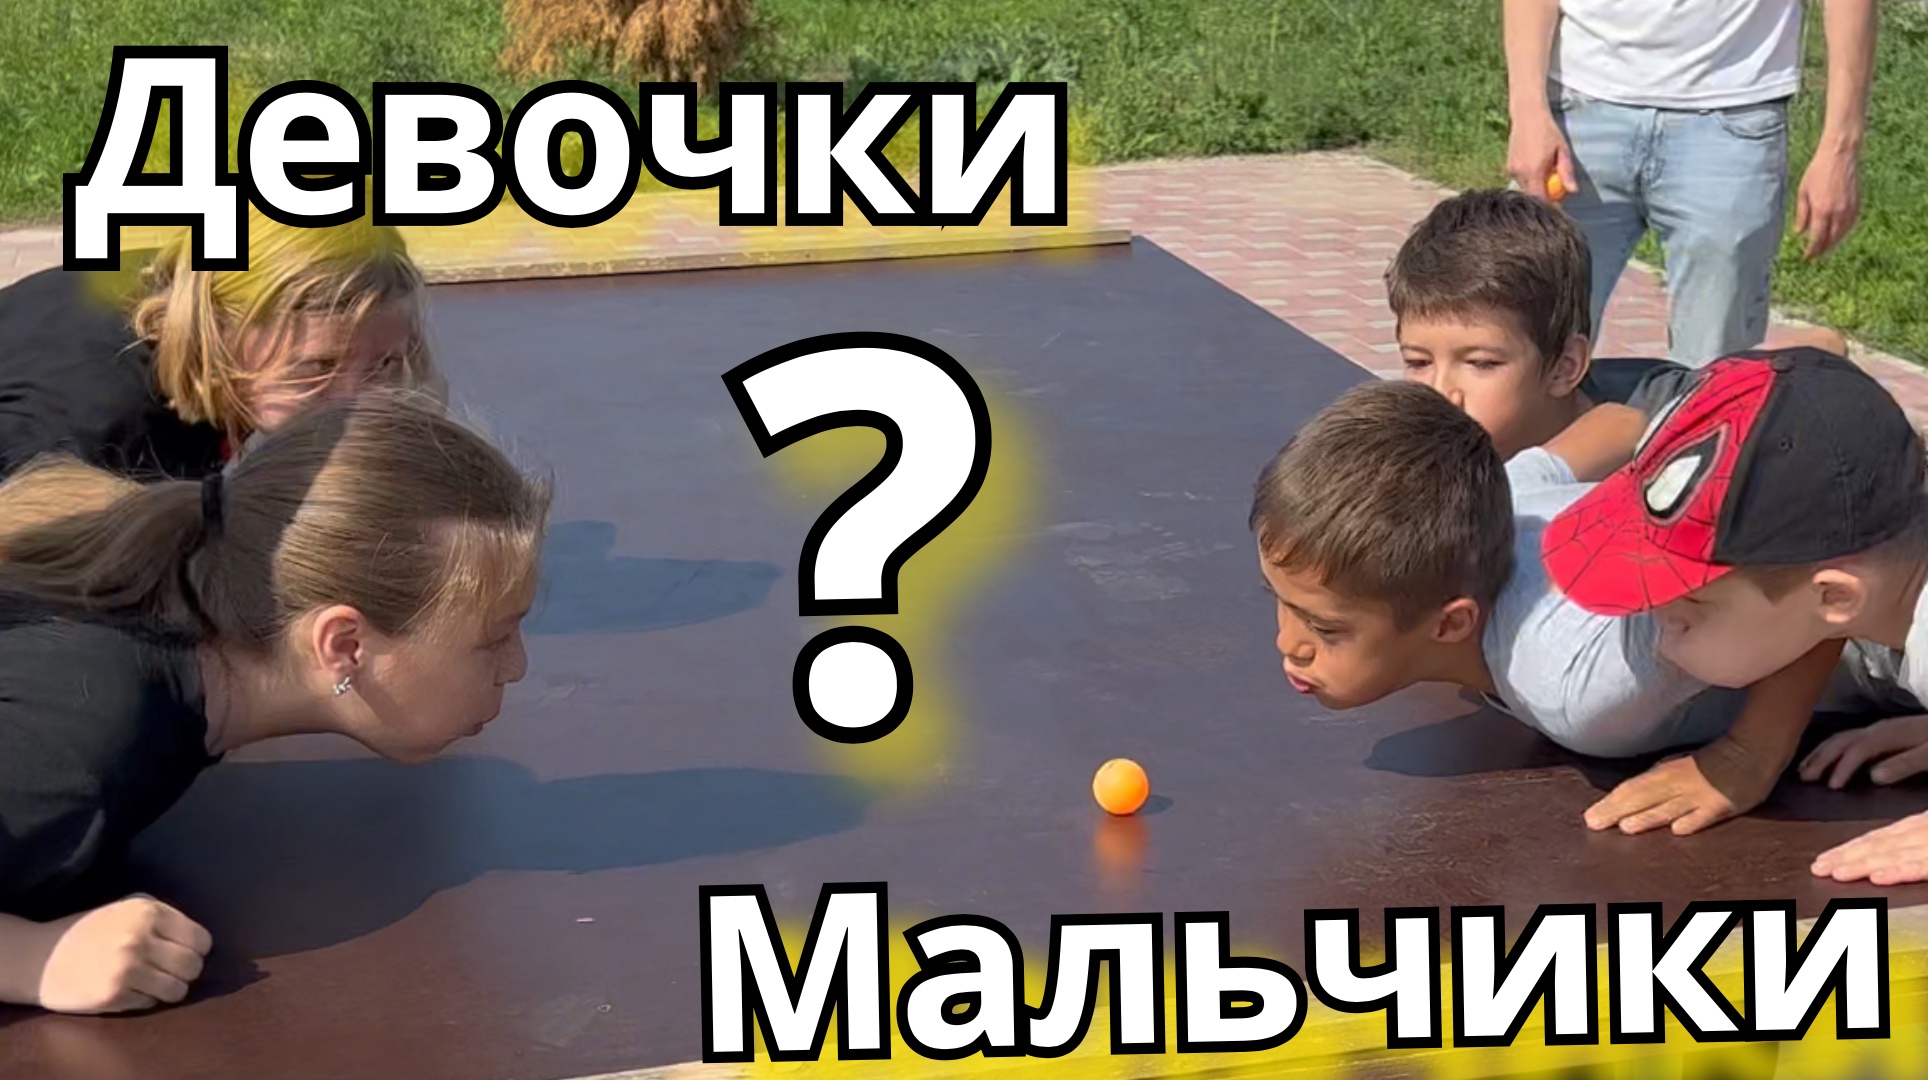 Детская заруба в парке #дети #конкурс #игры #лето #парк #батайск #ростовнадону #настроение #эмоции